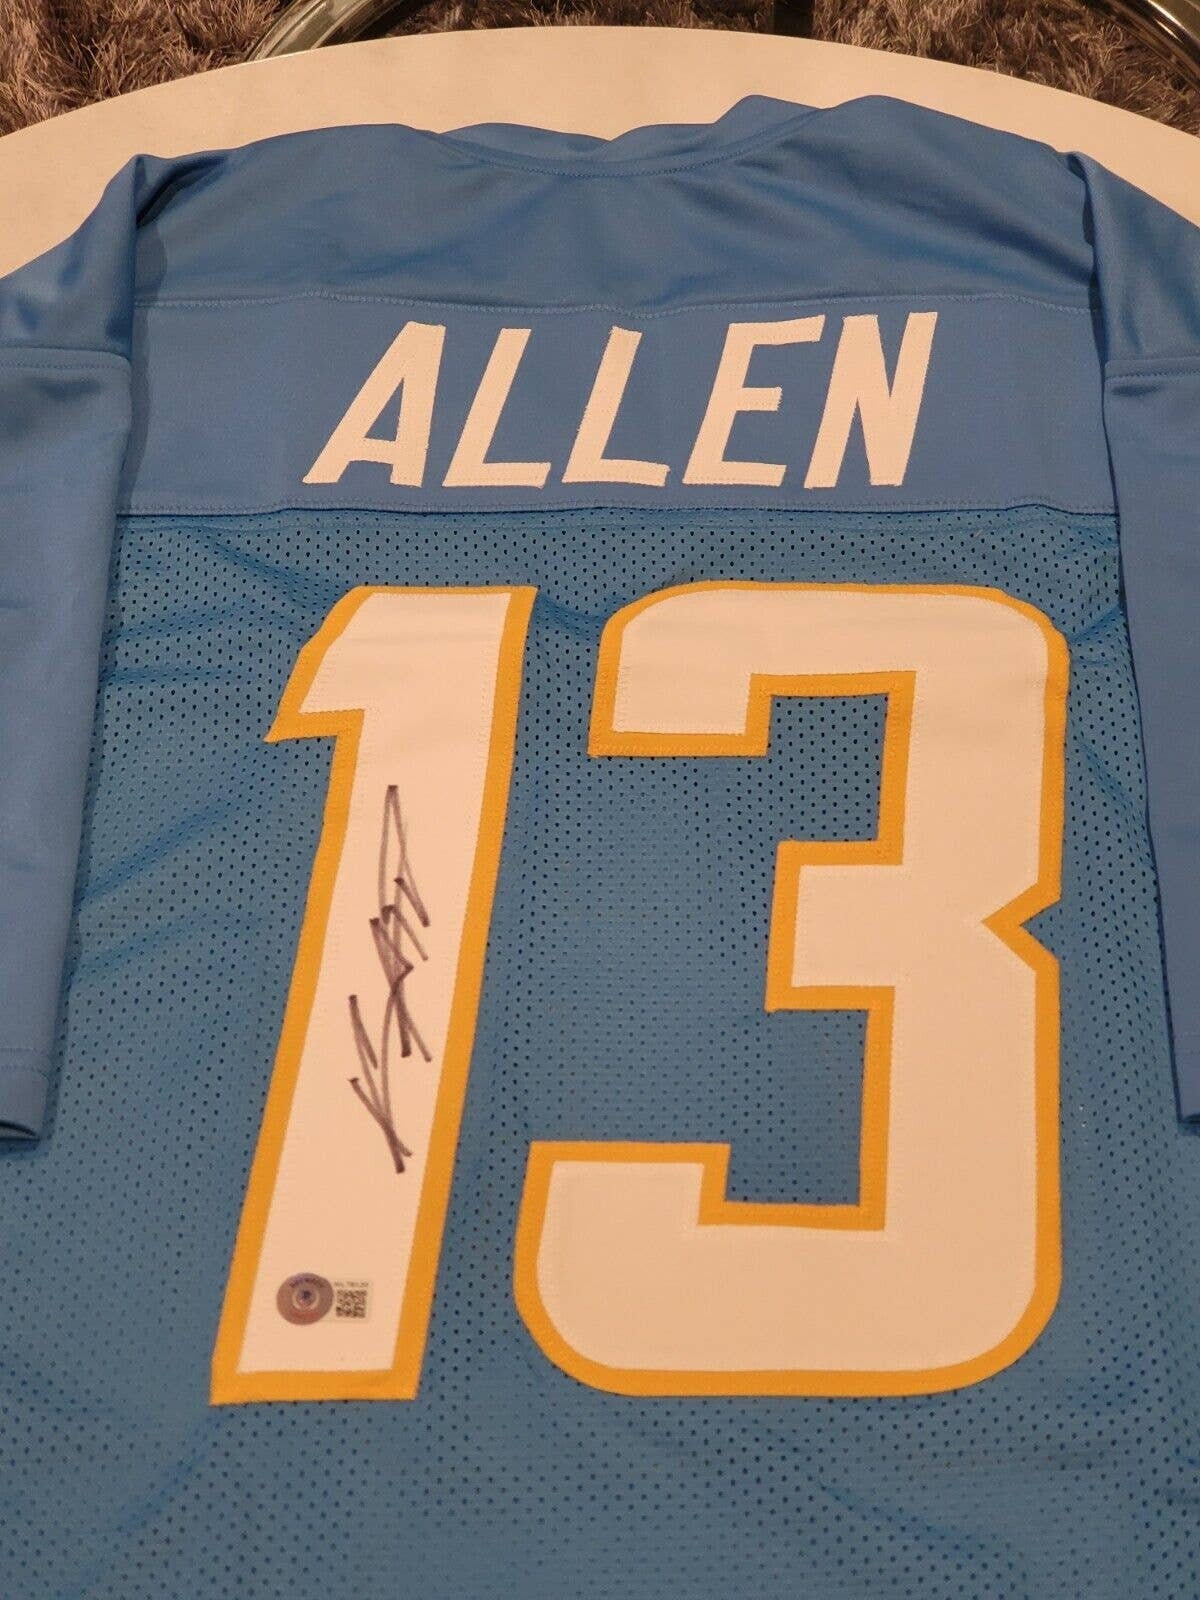 Keenan Allen Autographed/signed Jersey Beckett San Diego 